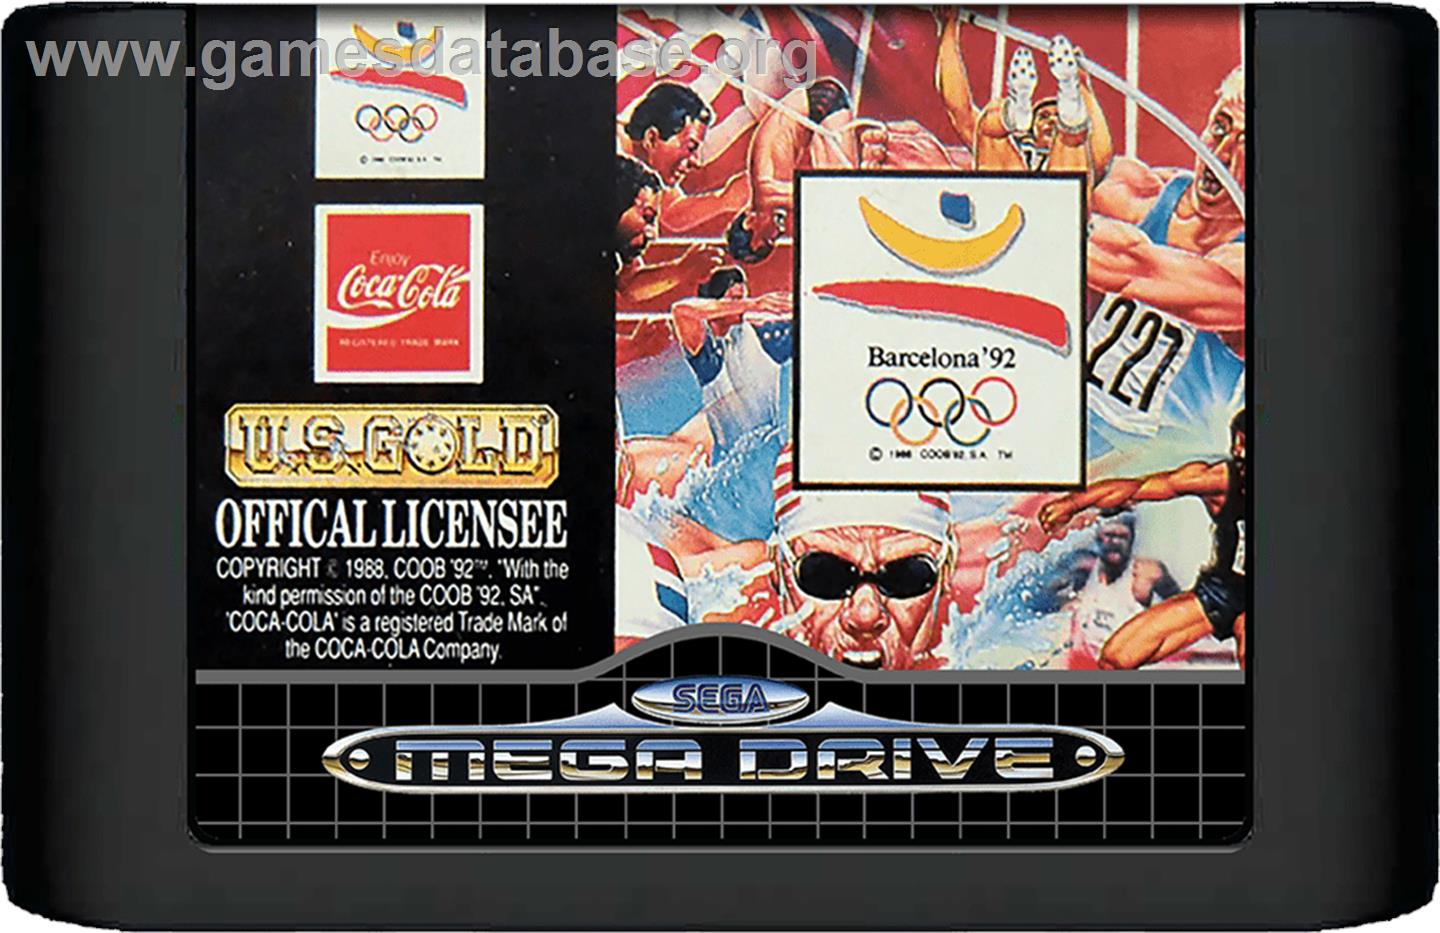 Olympic Gold: Barcelona '92 - Sega Genesis - Artwork - Cartridge